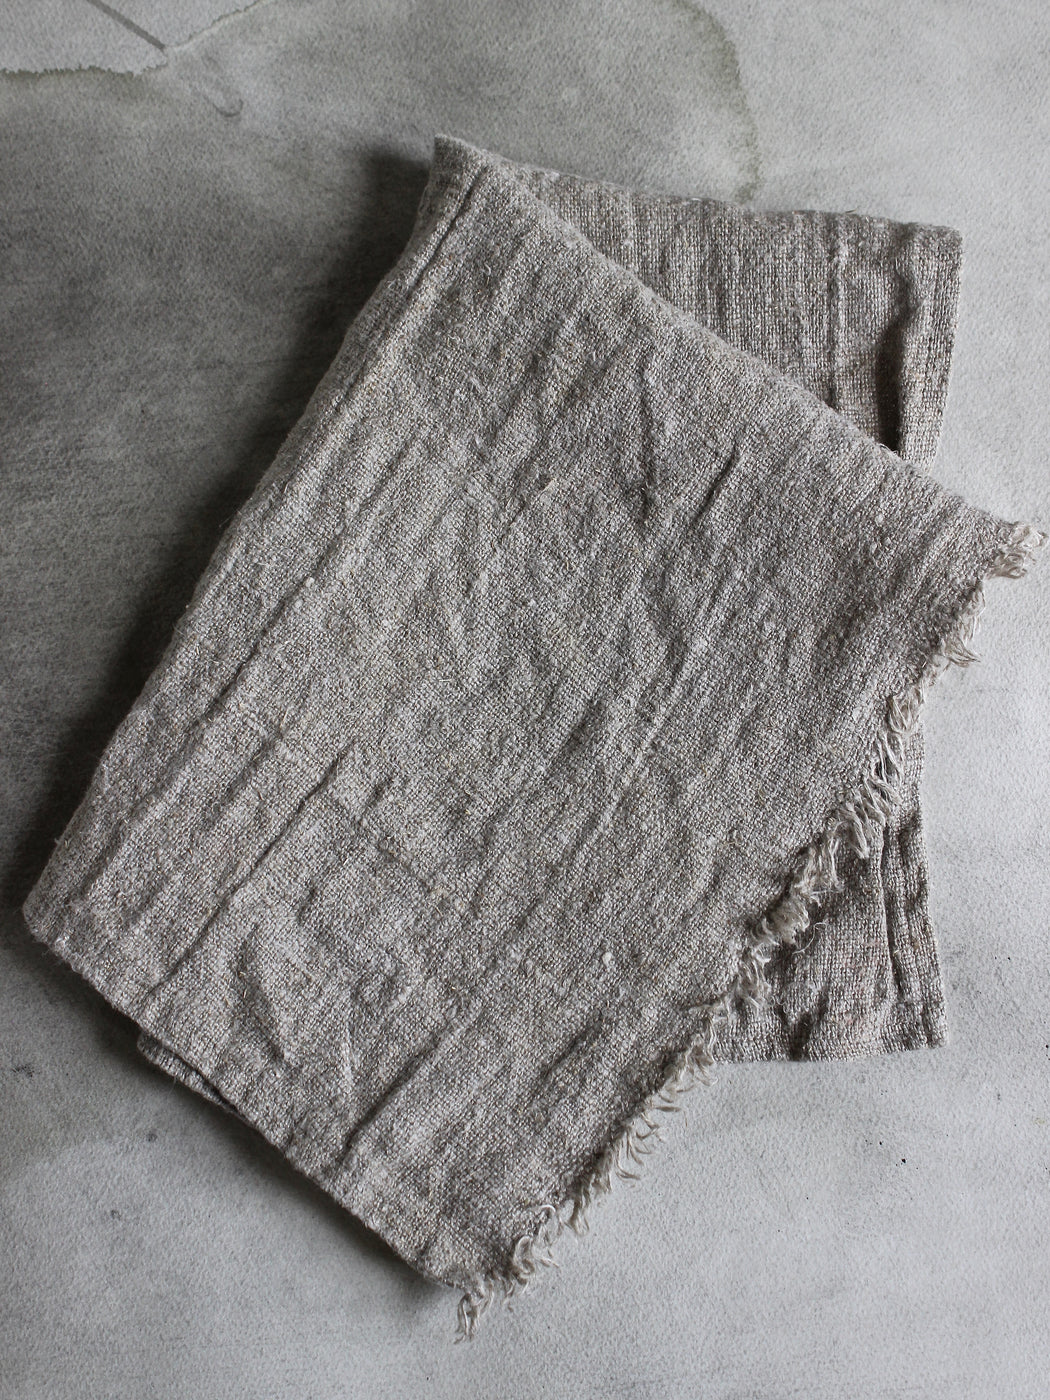 Axlings Natural Linen Tea Towels - Set of 2